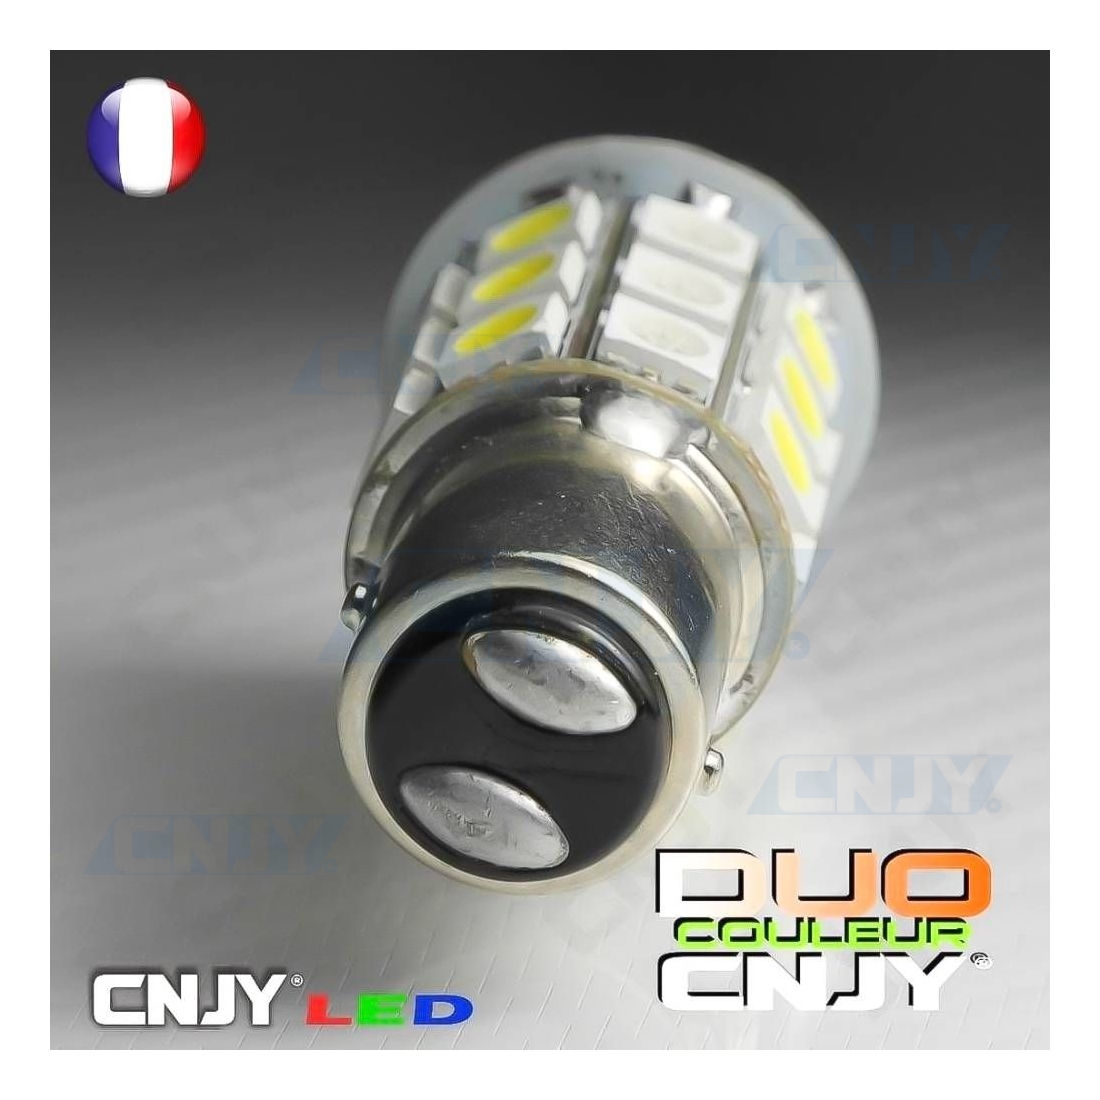 Ampoule P21/5W BAY15D 78 Leds blanches 9-30 volts - Led-effect